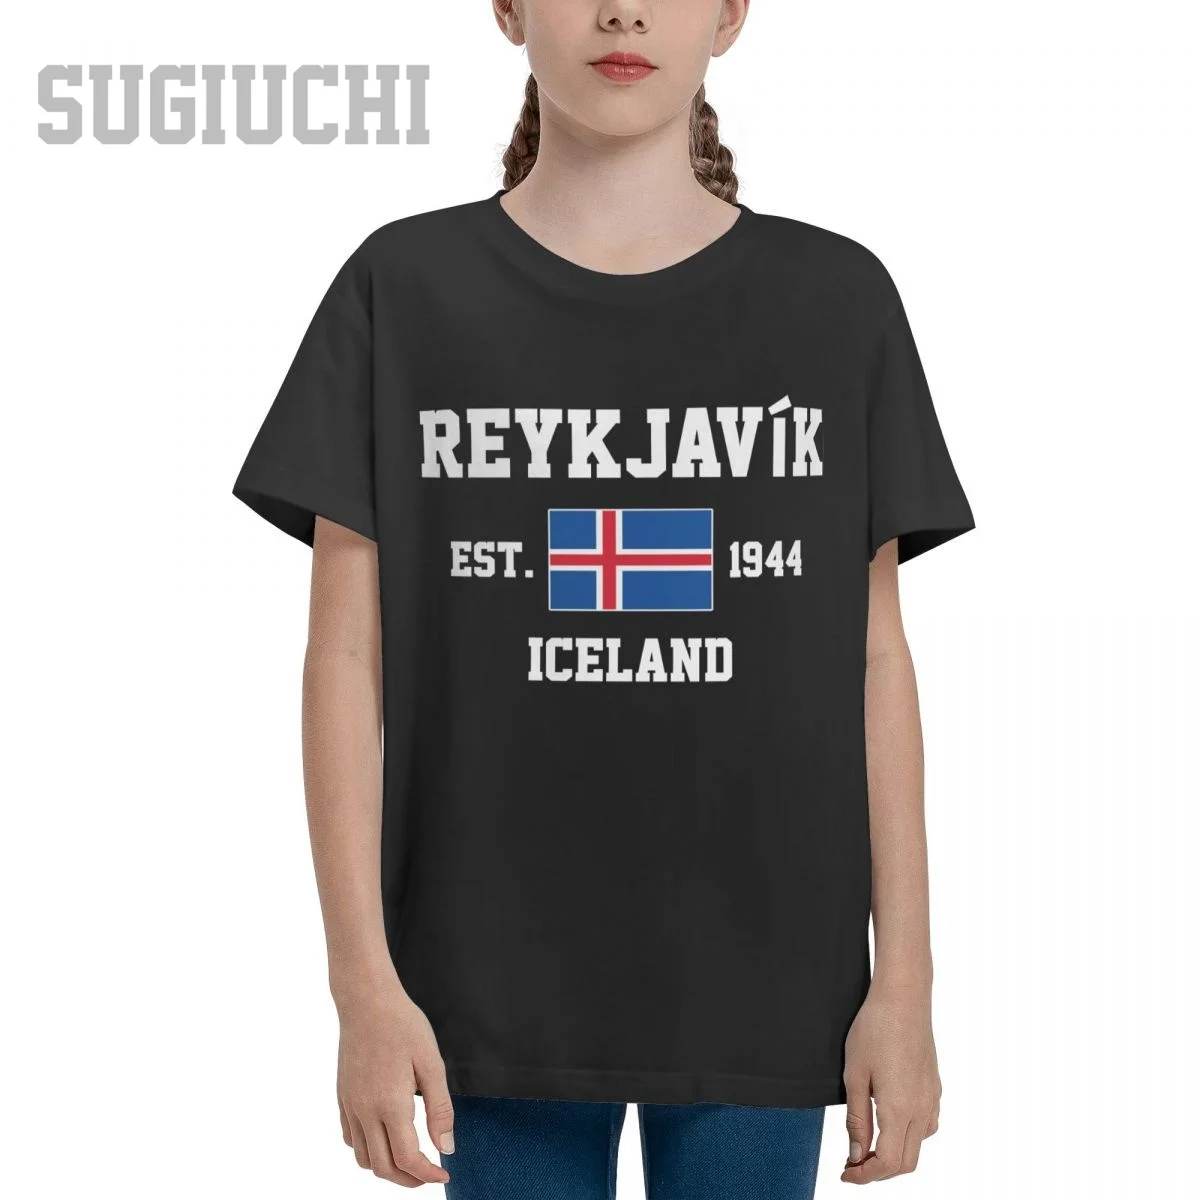 Unisex Ifjúsági Fiú/Lány Izland EST.1944 Reykjavik Tőke póló Gyerekek tshirt póló, 100% Pamut Póló o-nyak rövid Gyermekek